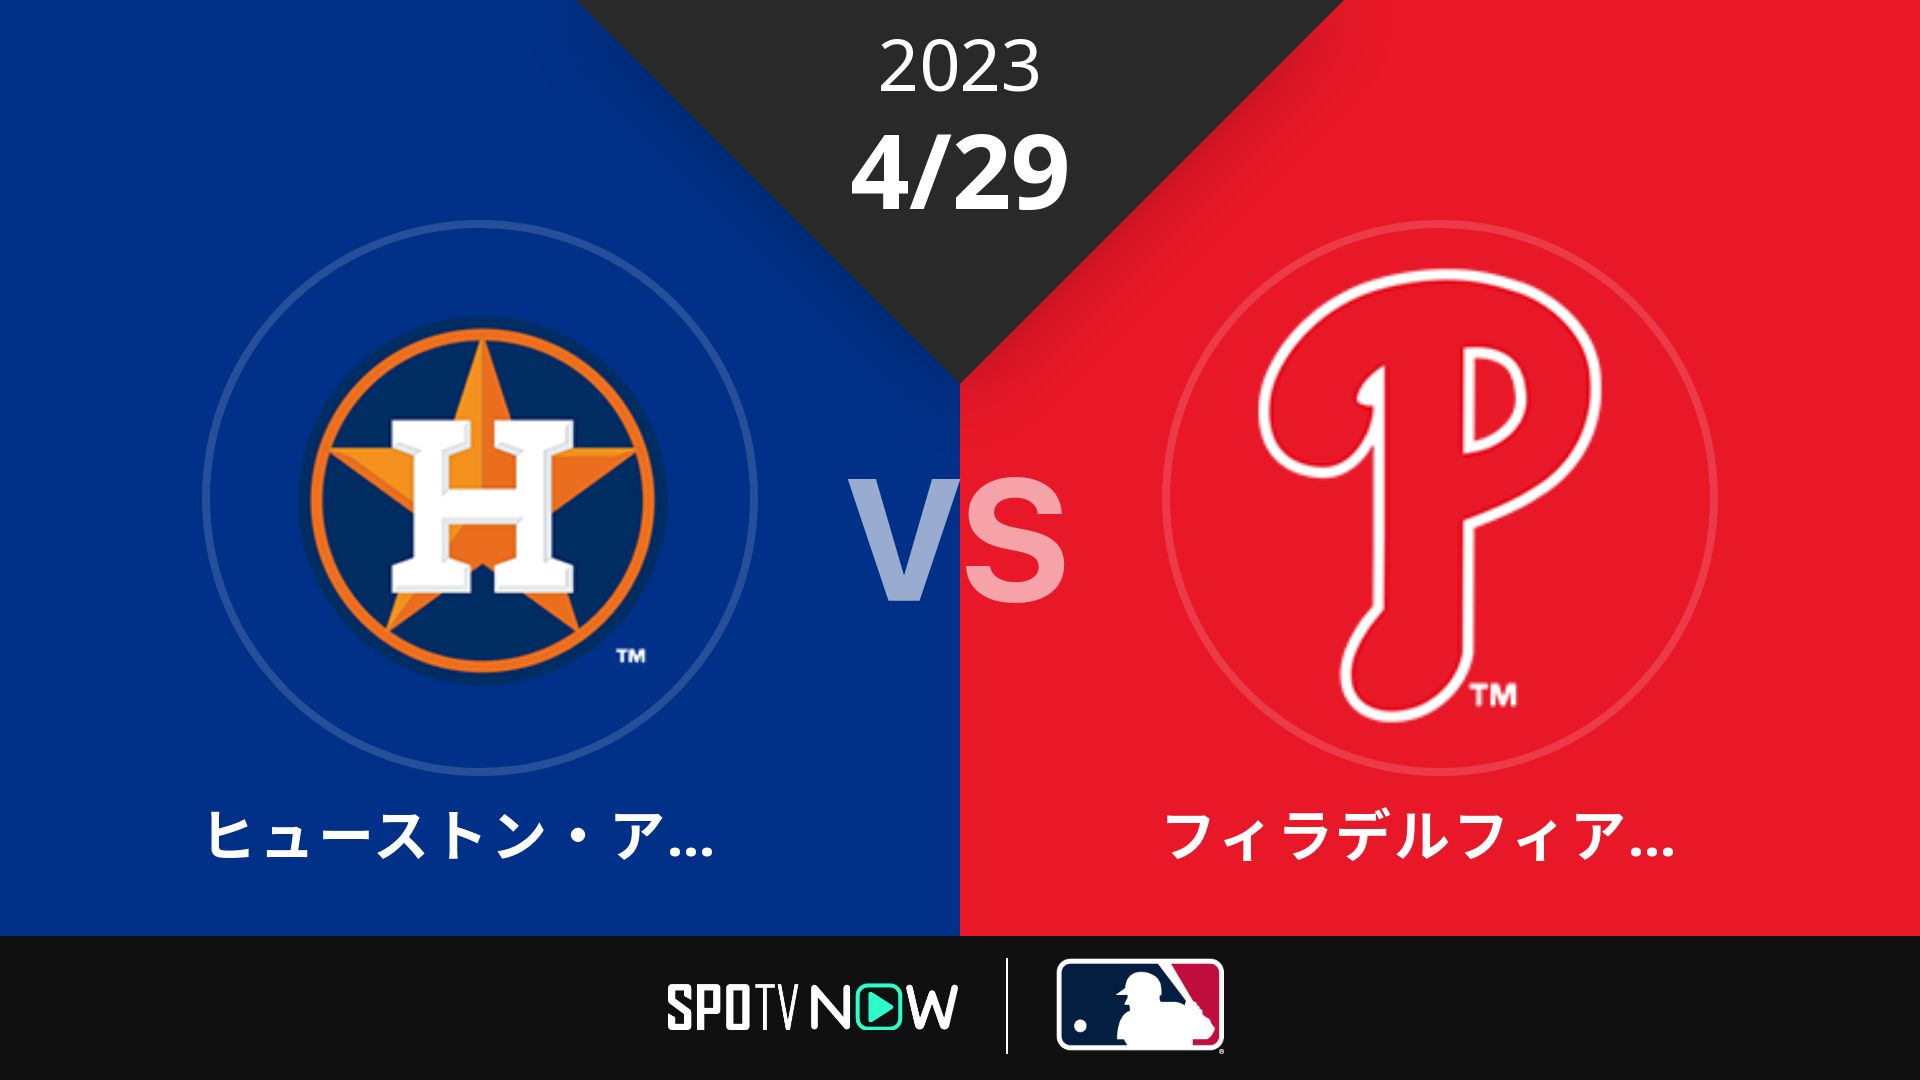 2023/4/29 アストロズ vs フィリーズ [MLB]